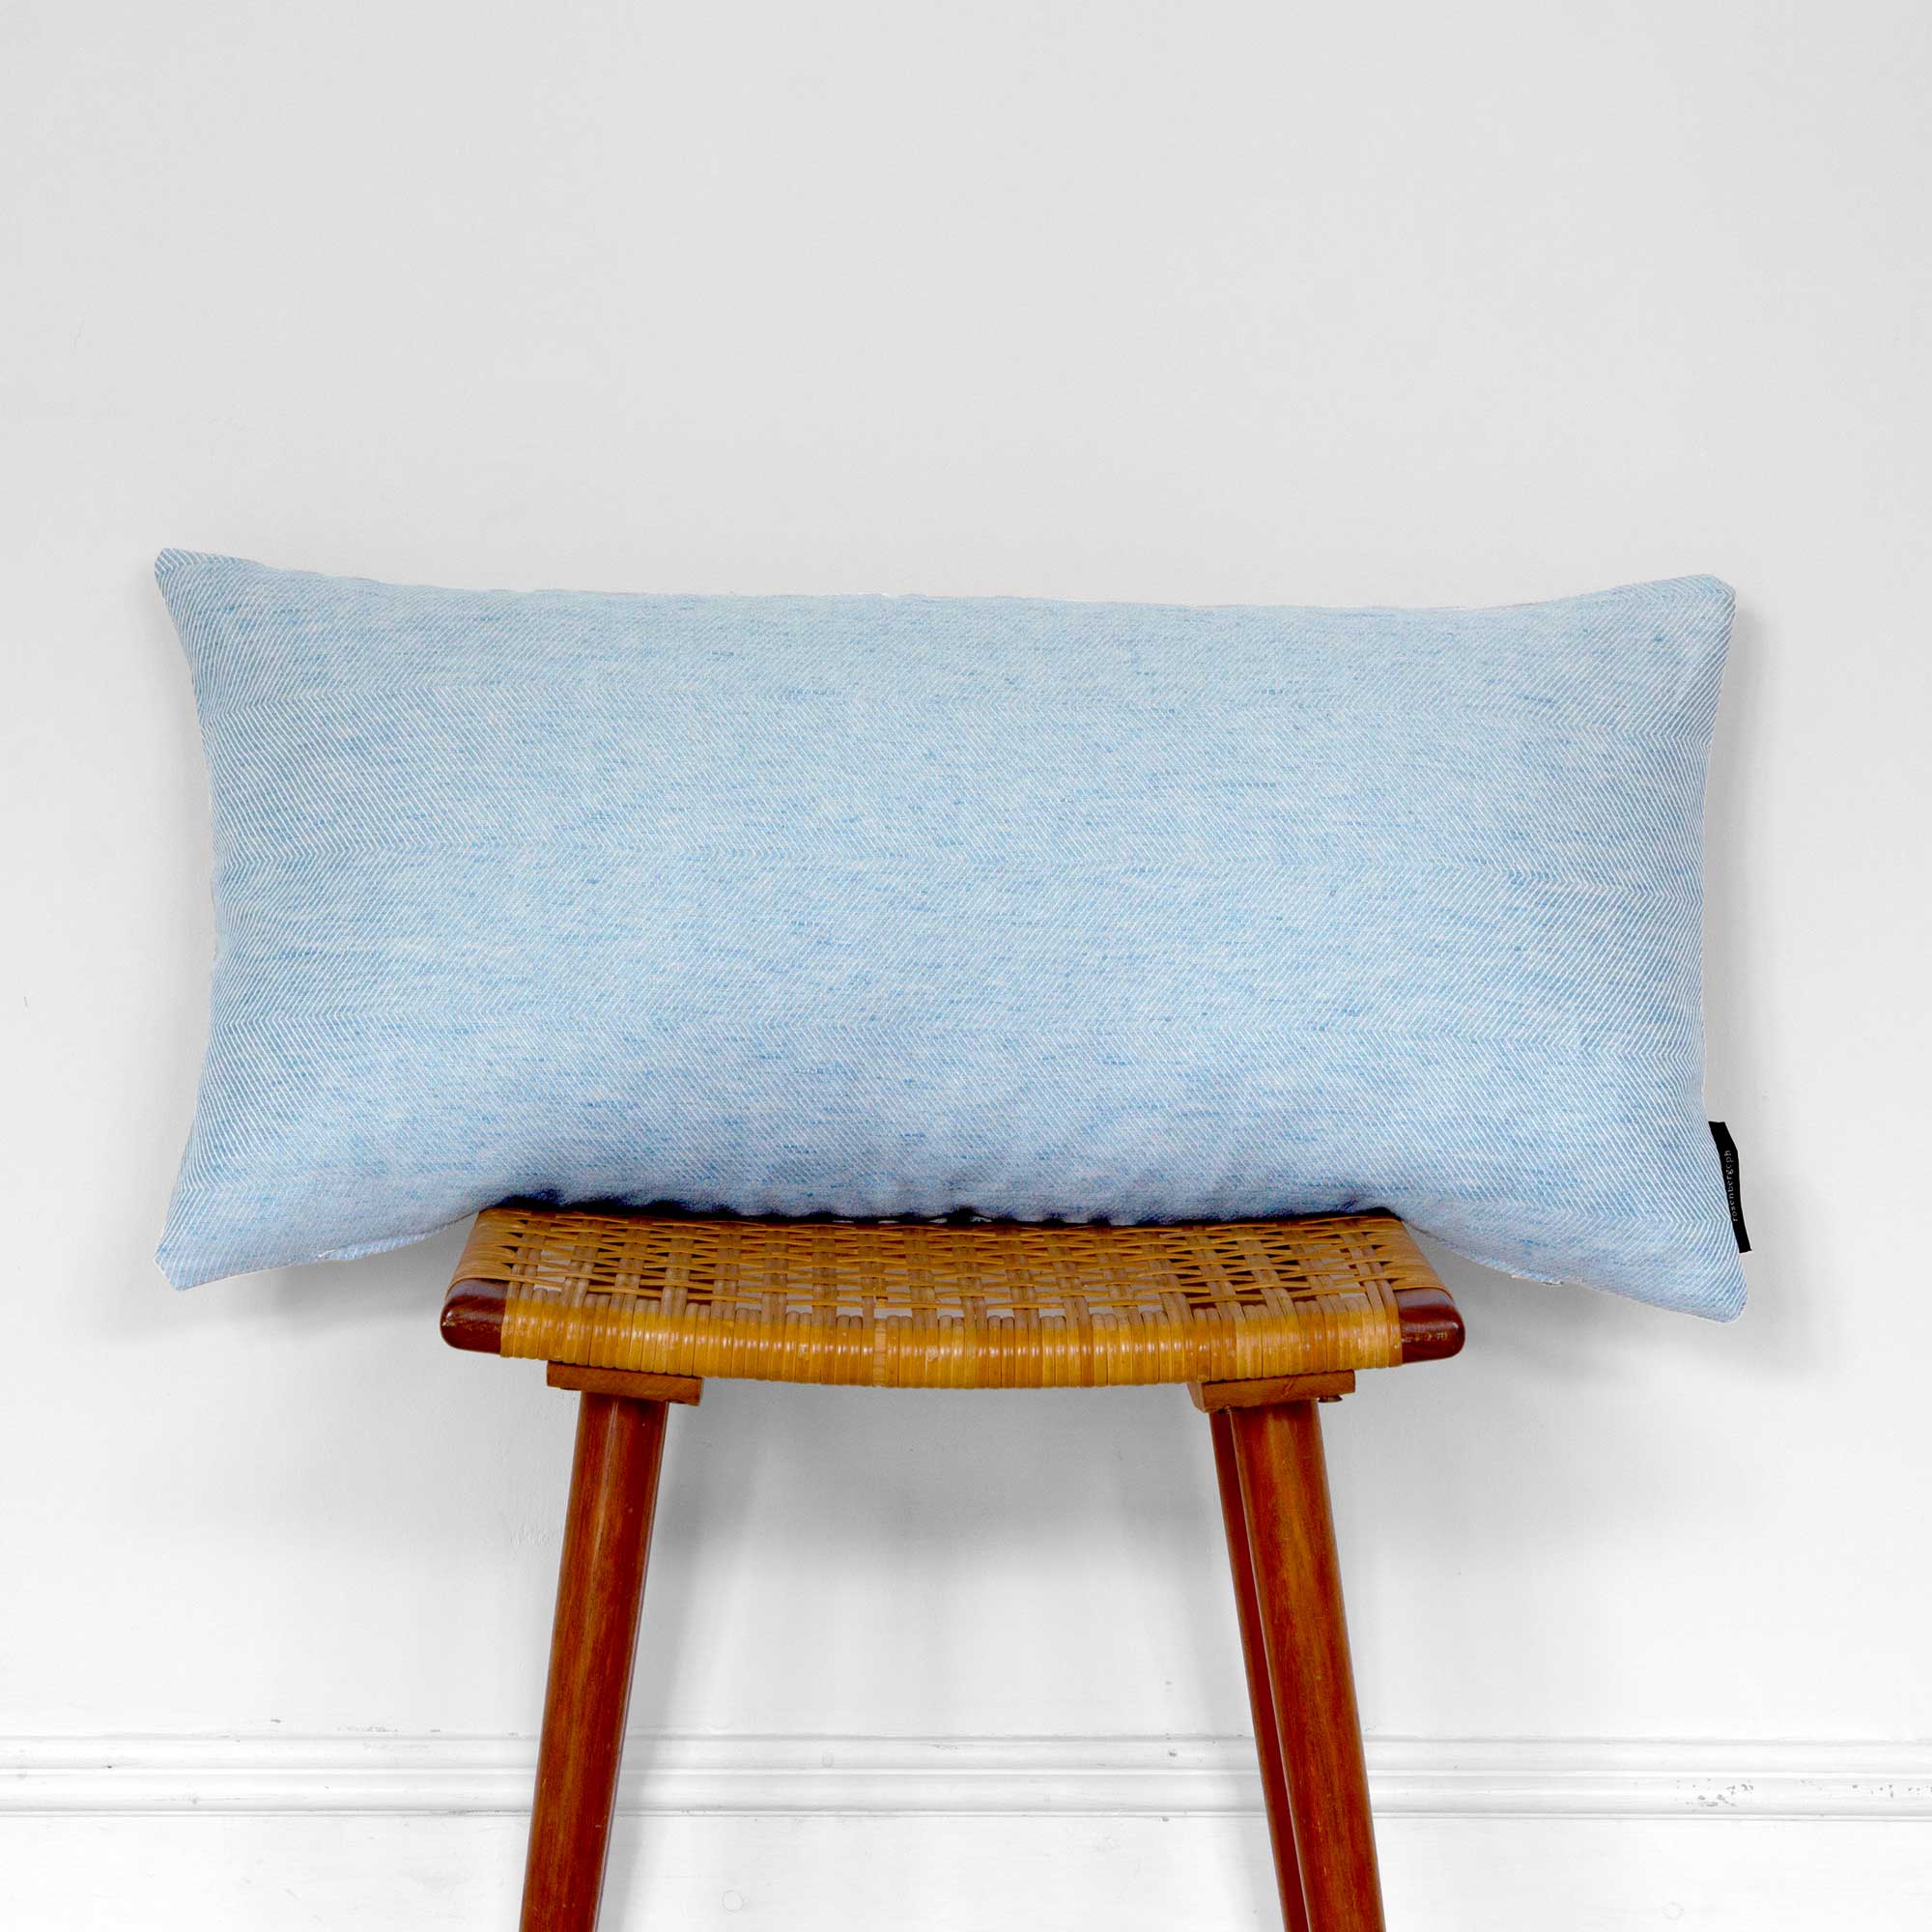 Rectangular cushion linen/cotton Sky Blue, design by Anne Rosenberg, RosenbergCph